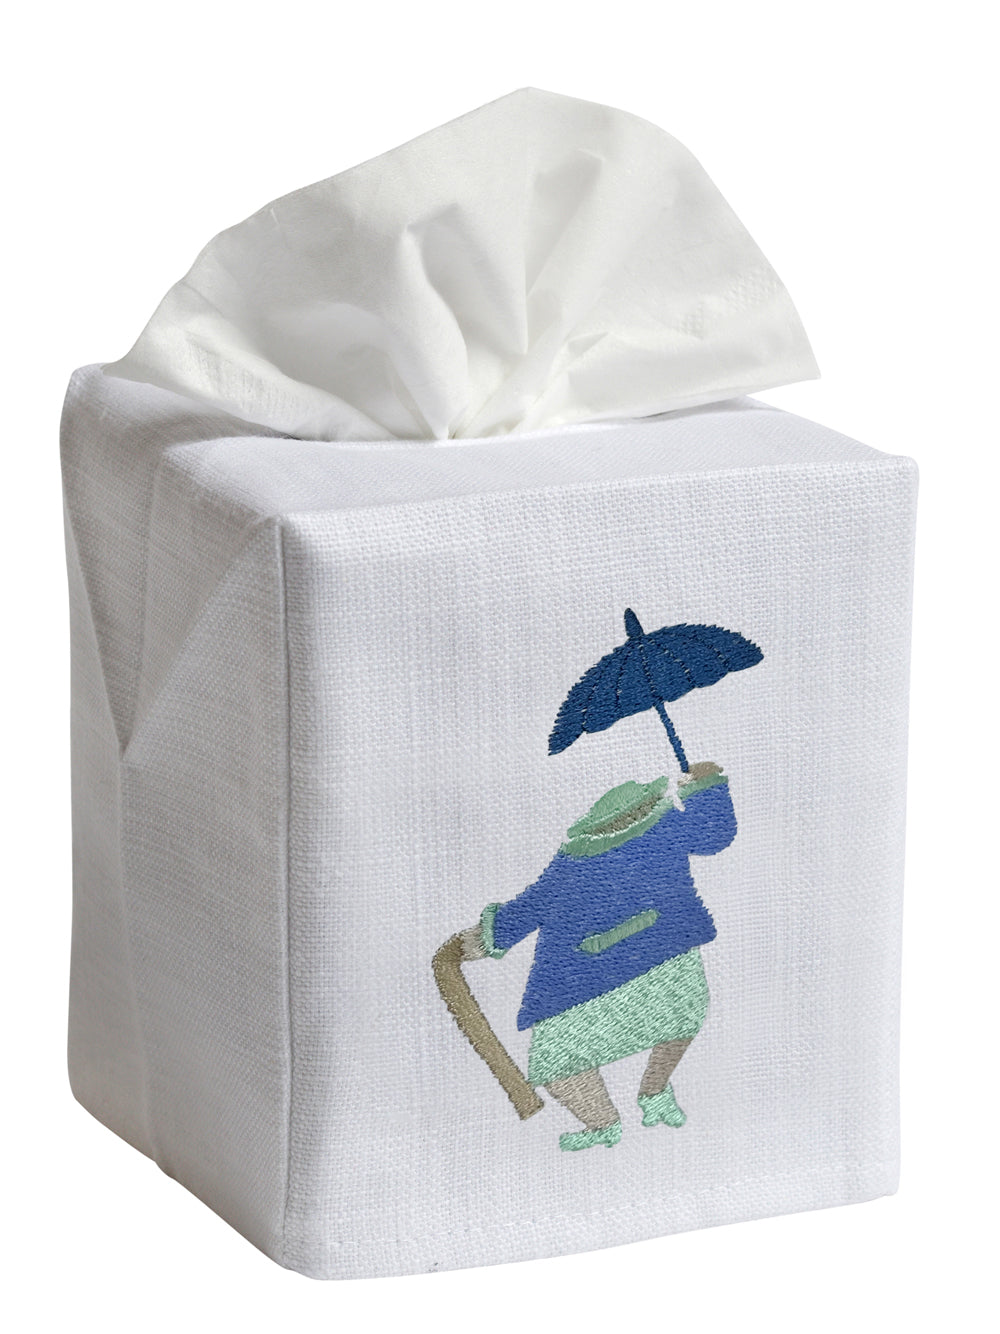 Tissue Box Cover, Umbrella Lady (Blue)